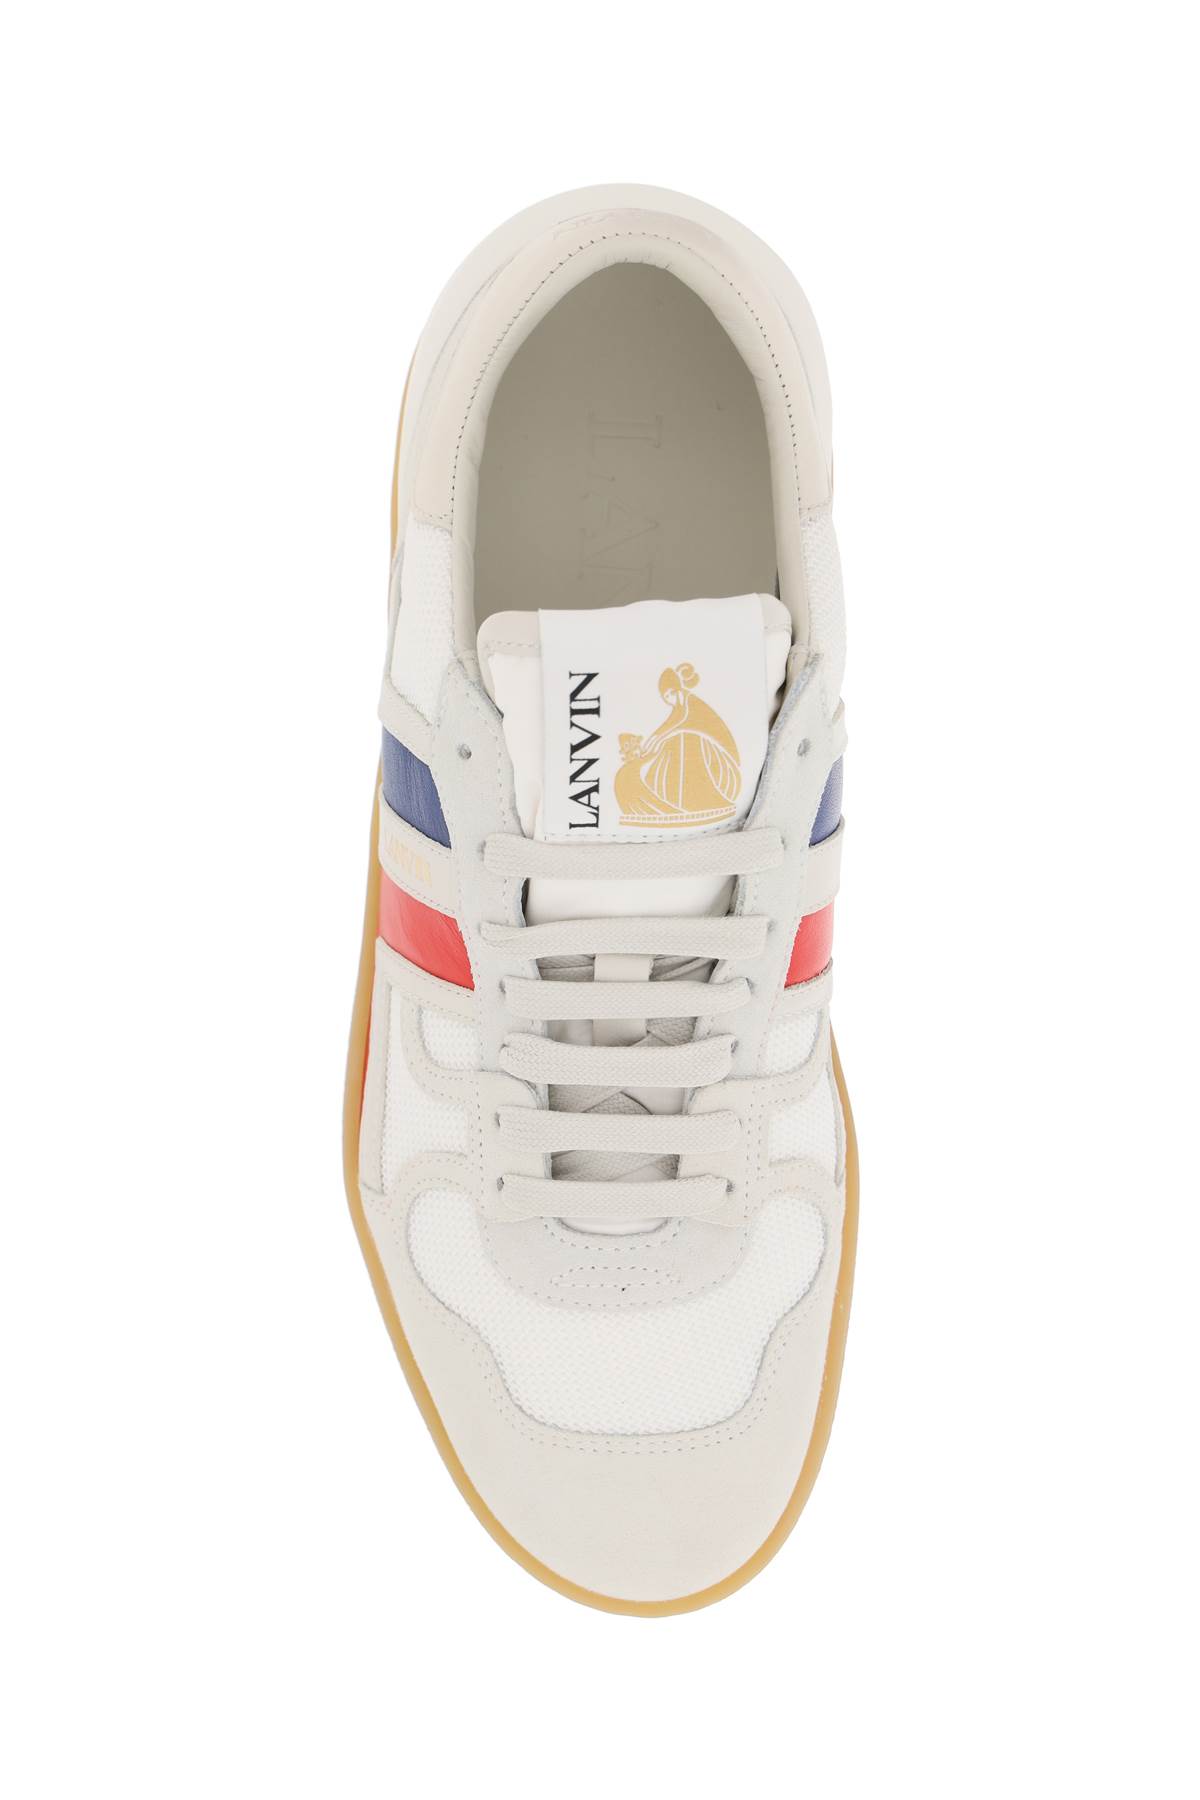 Shop Lanvin Clay Sneakers In White/multicolour